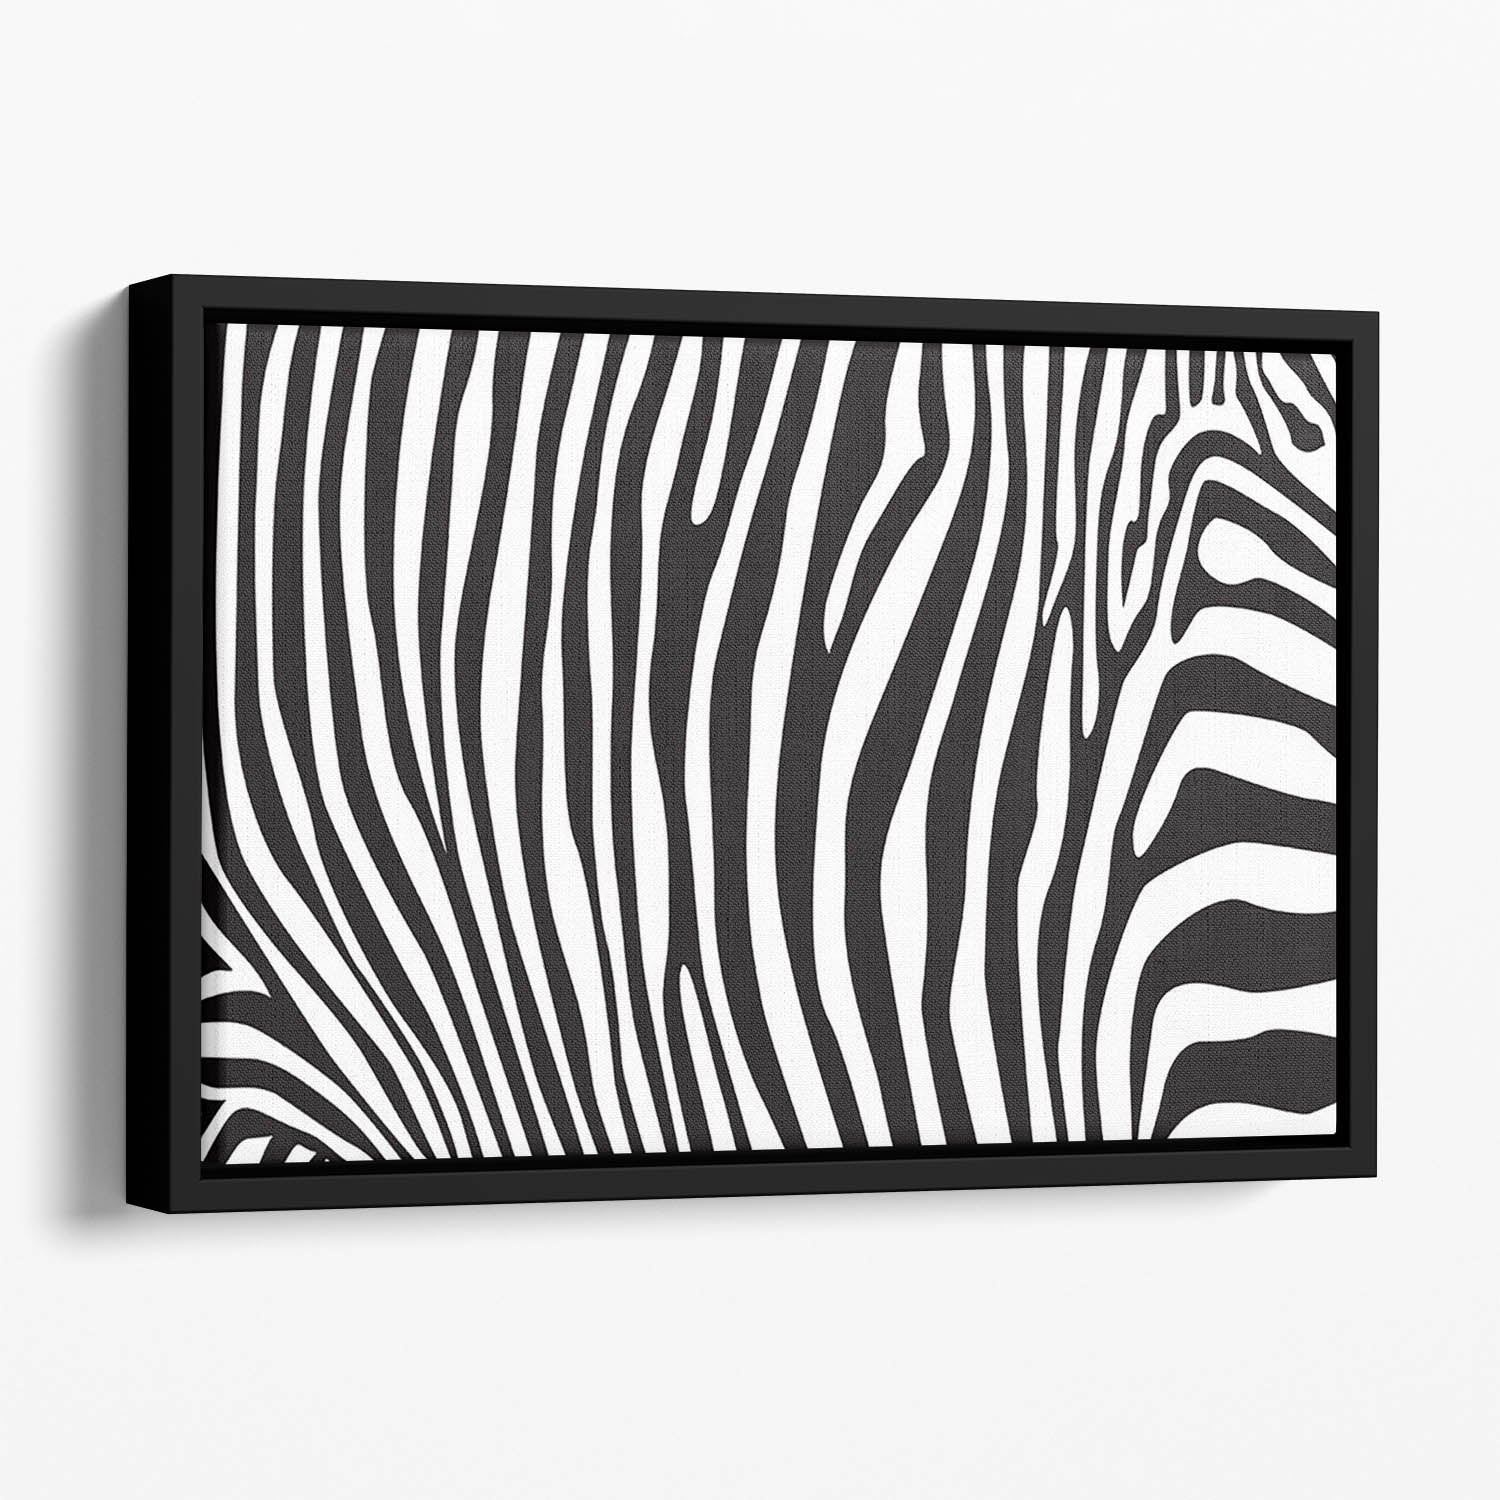 Zebra stripes pattern Floating Framed Canvas